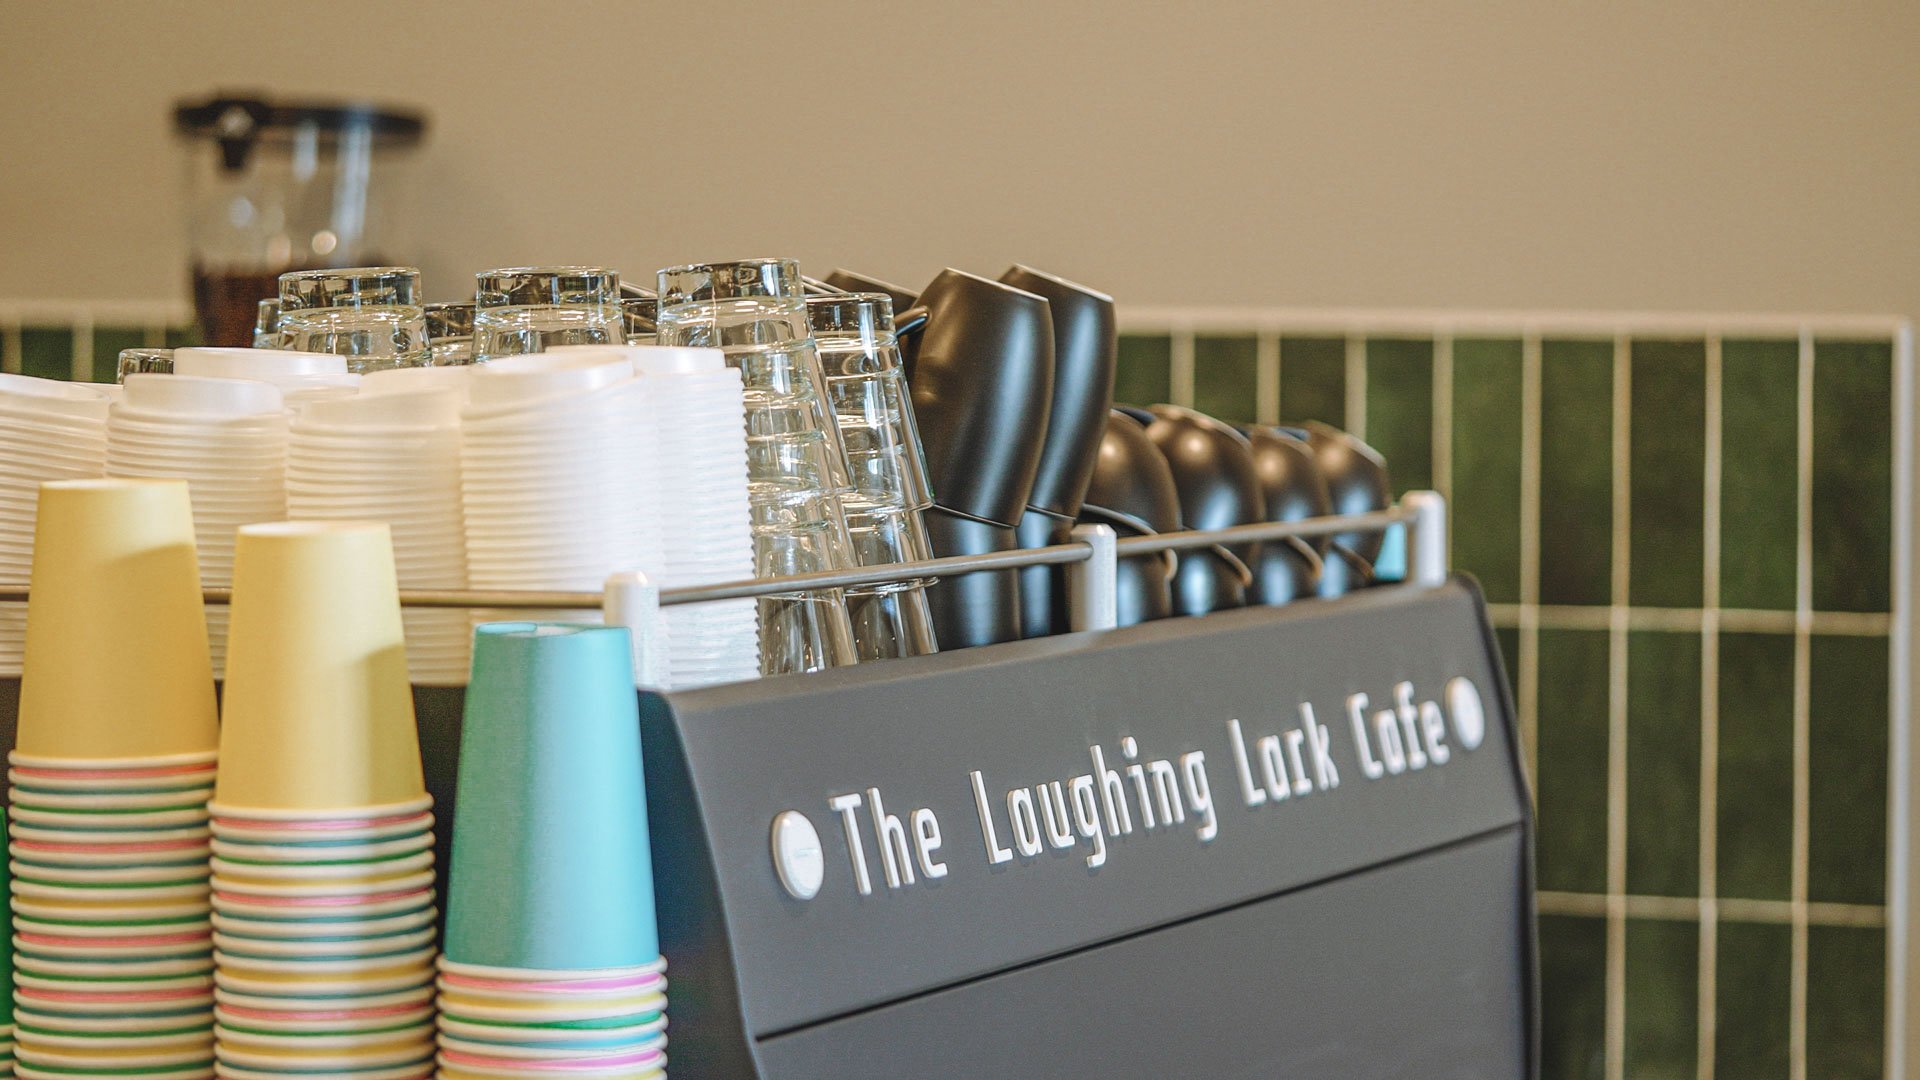 Laughing-Lark-Cafe-341.jpg